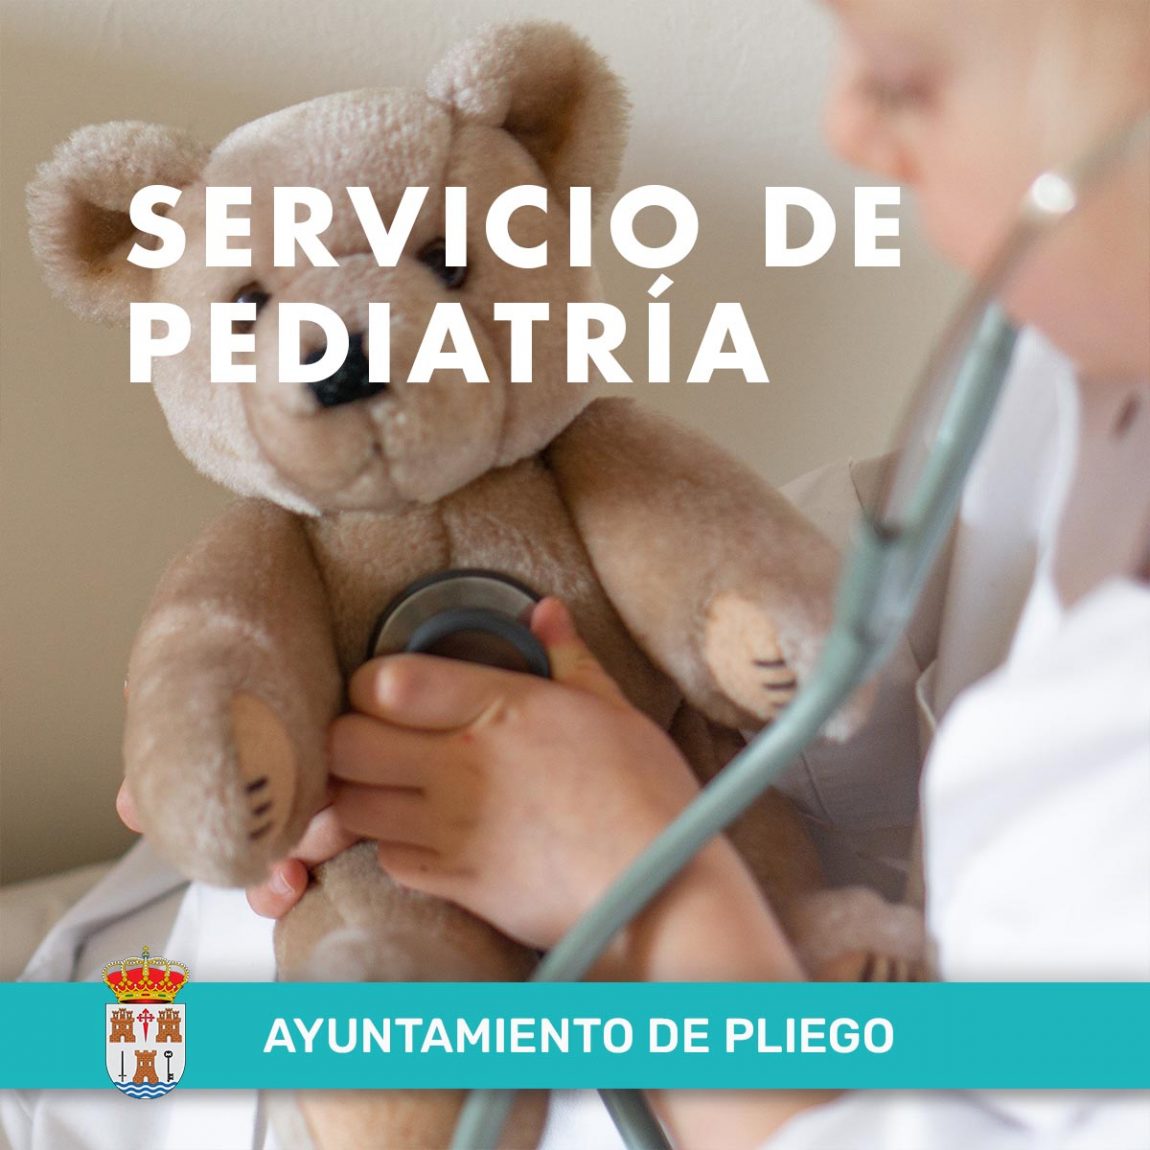 Servicio de pediatría